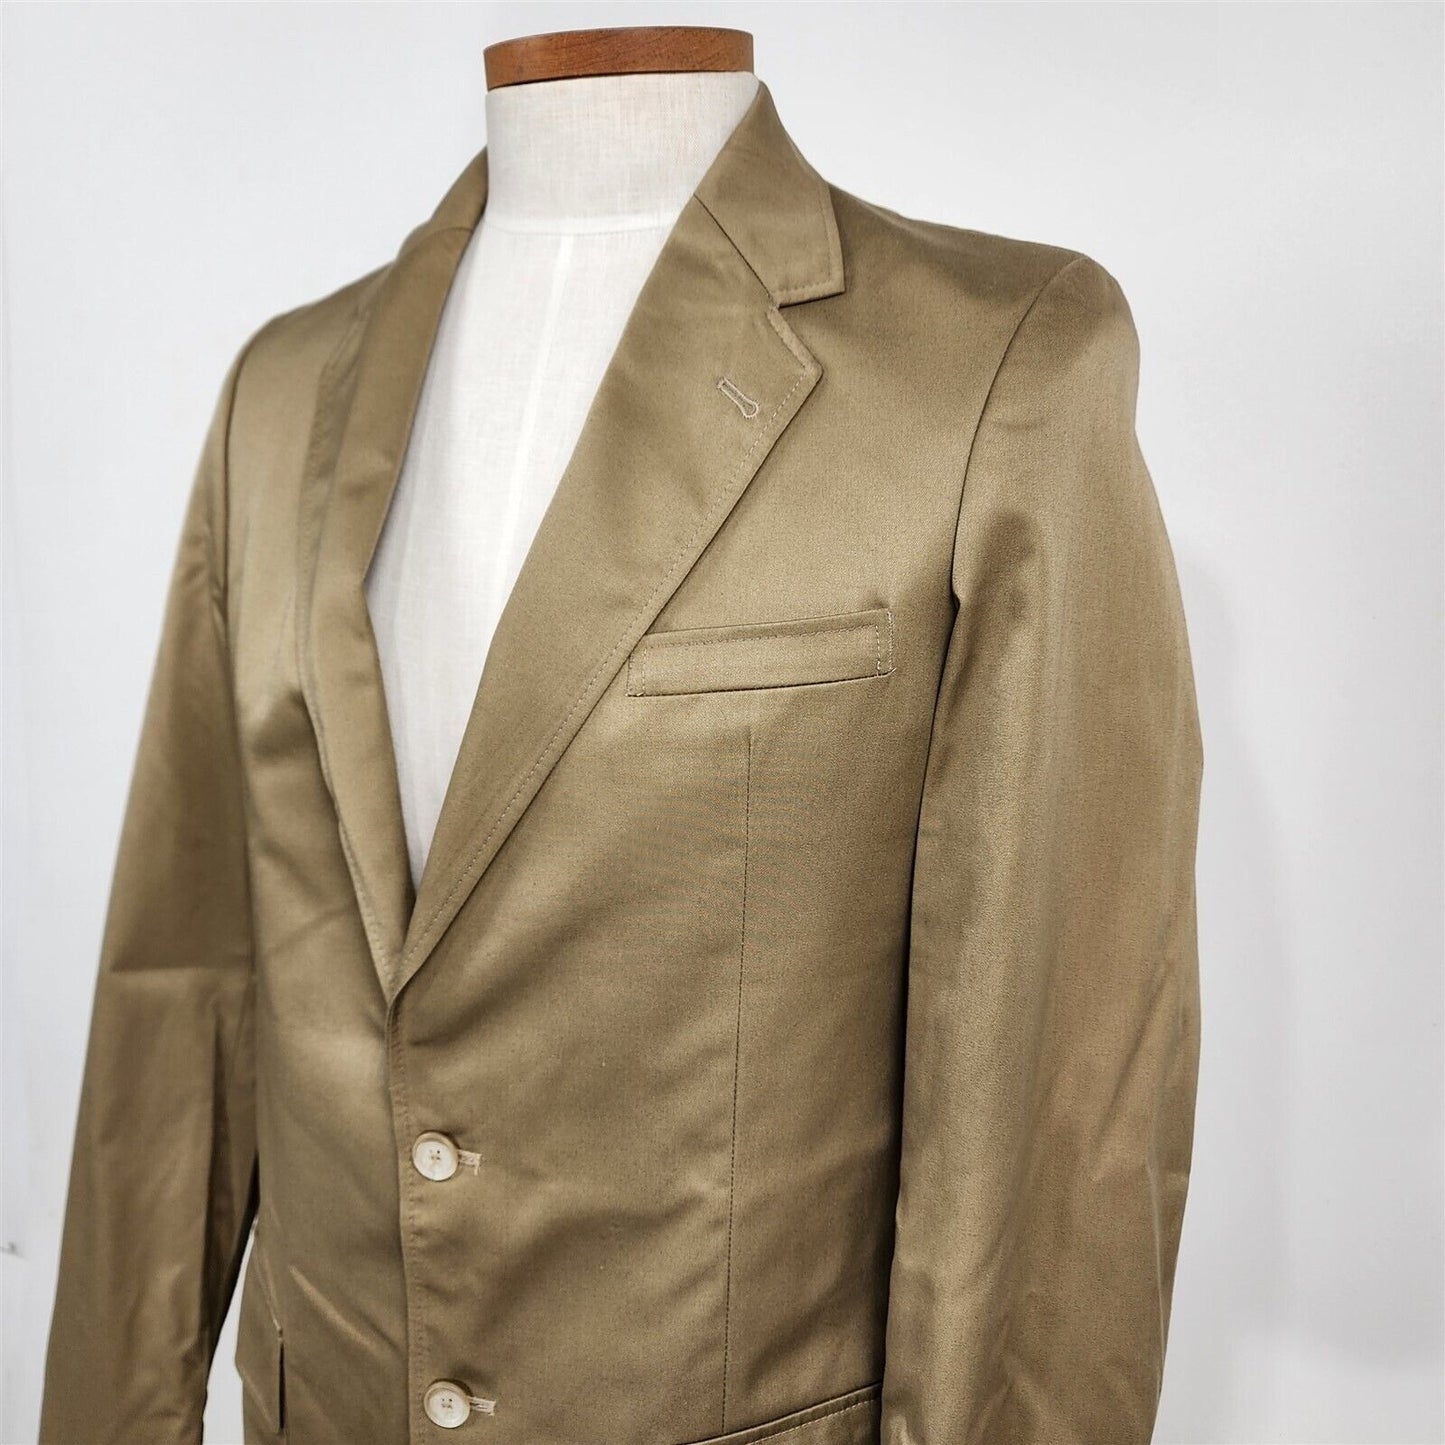 Vintage Jeffrey Allan Tan Beige 2 Button Suit Jacket Sport Coat Blazer Size 39L